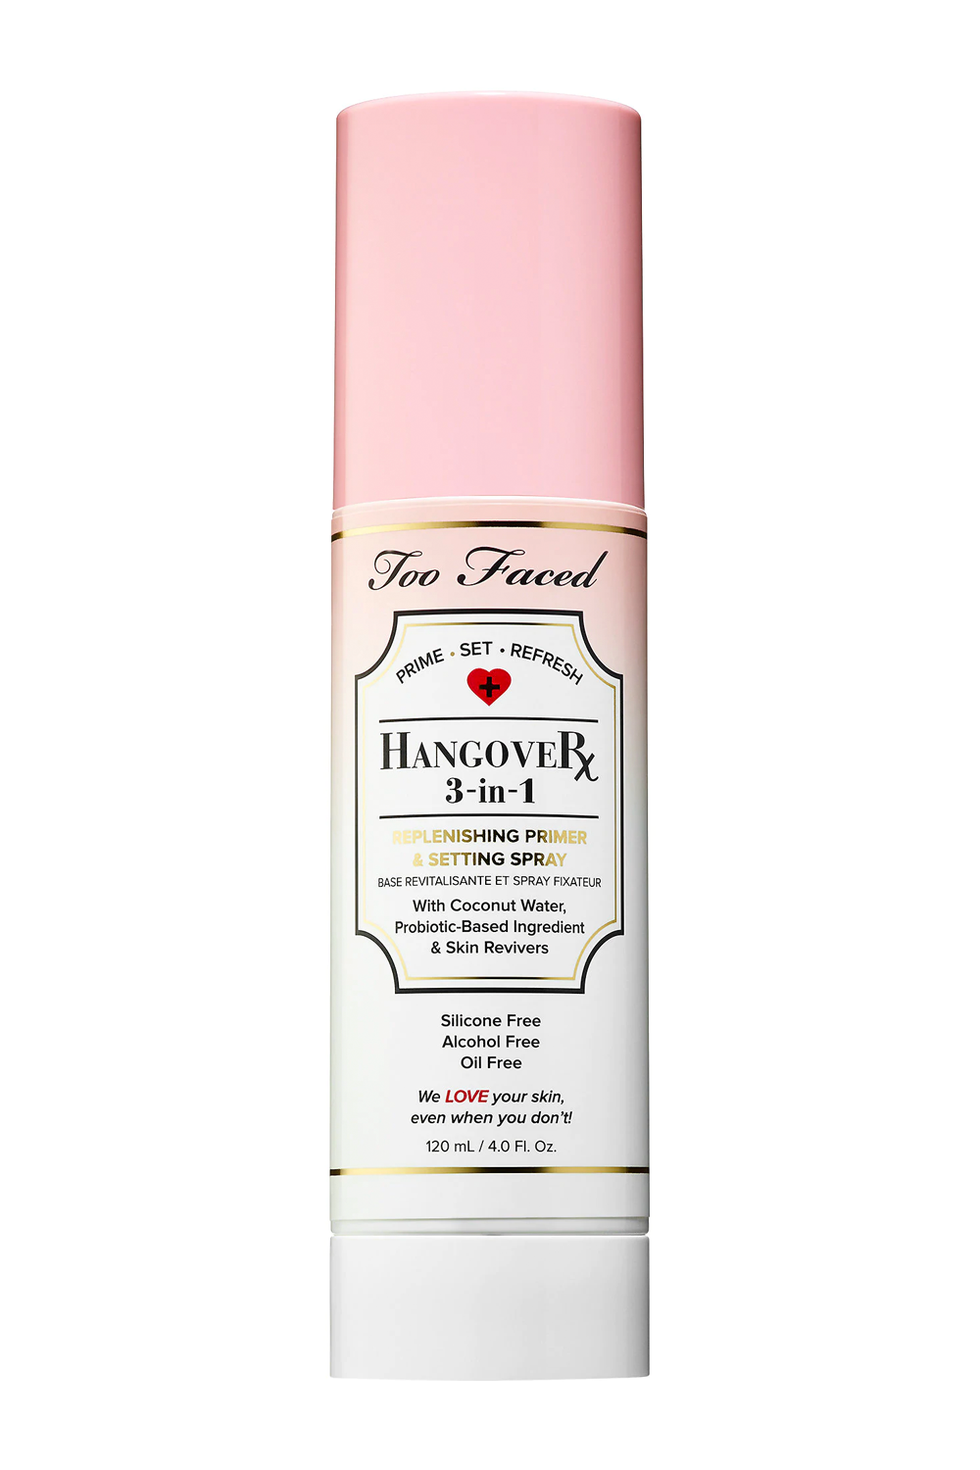 Too Faced Hangover 3-In-1 Replenishing Primer & Setting Spray